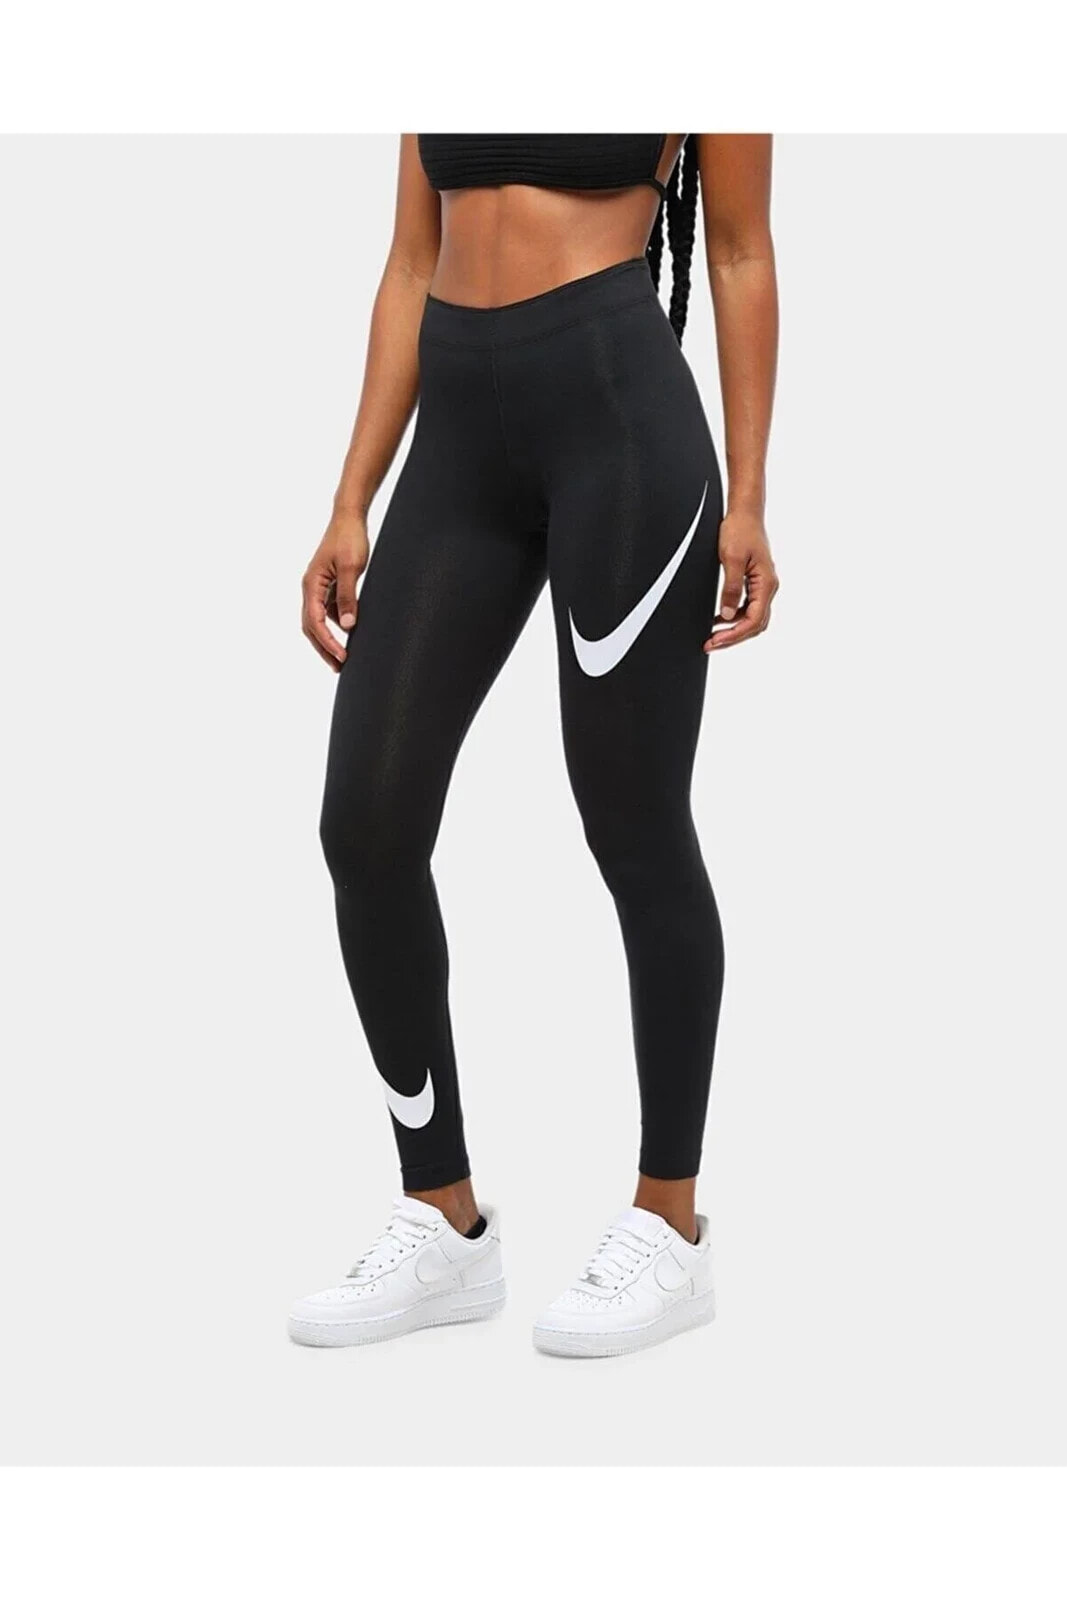 Siyah Kadın Spor Tayt - Kadın Sportswear Leg-a-see Swoosh Tayt - Db3896-010